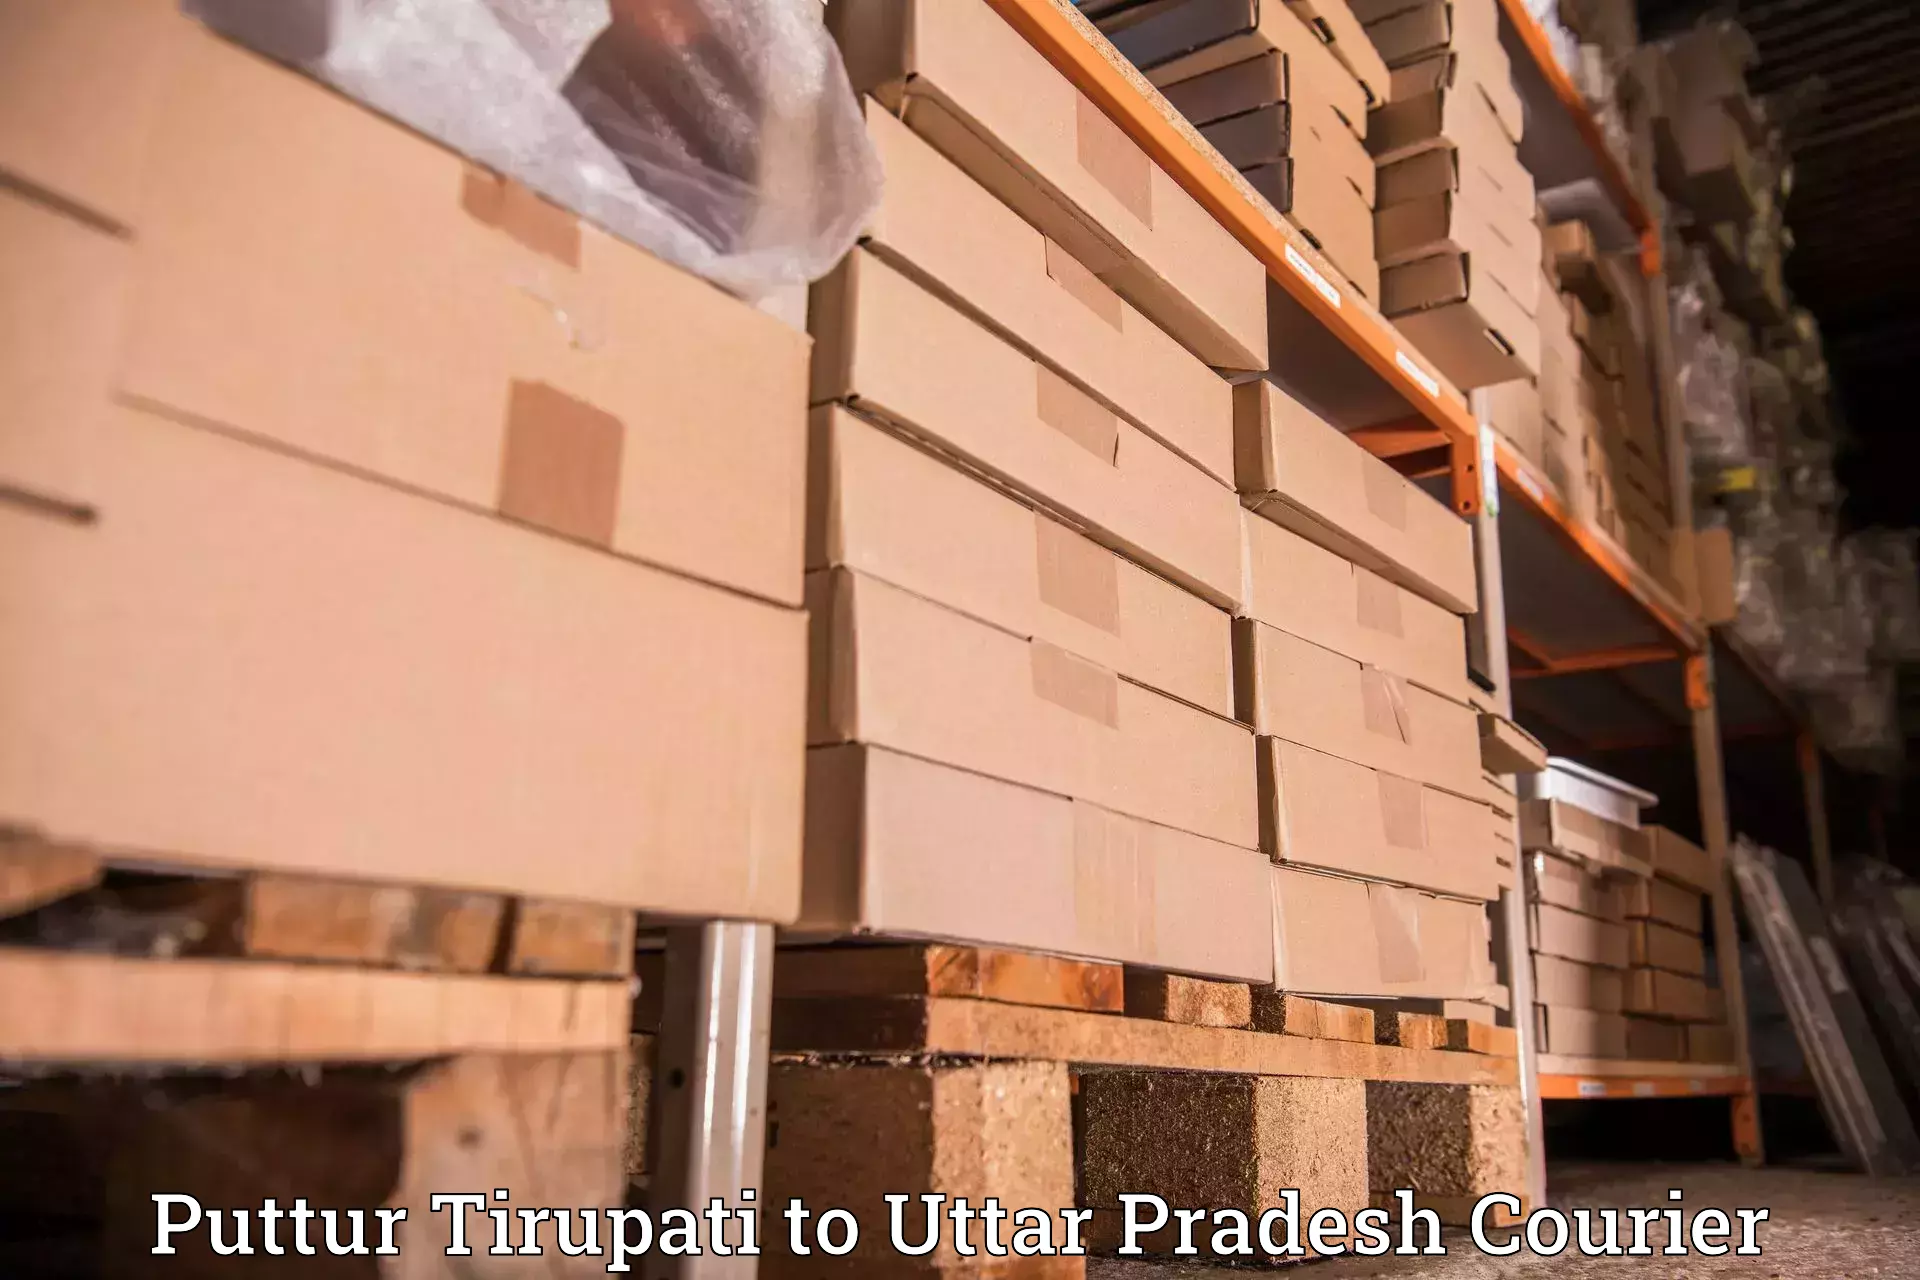 Multi-city courier Puttur Tirupati to Gorakhpur